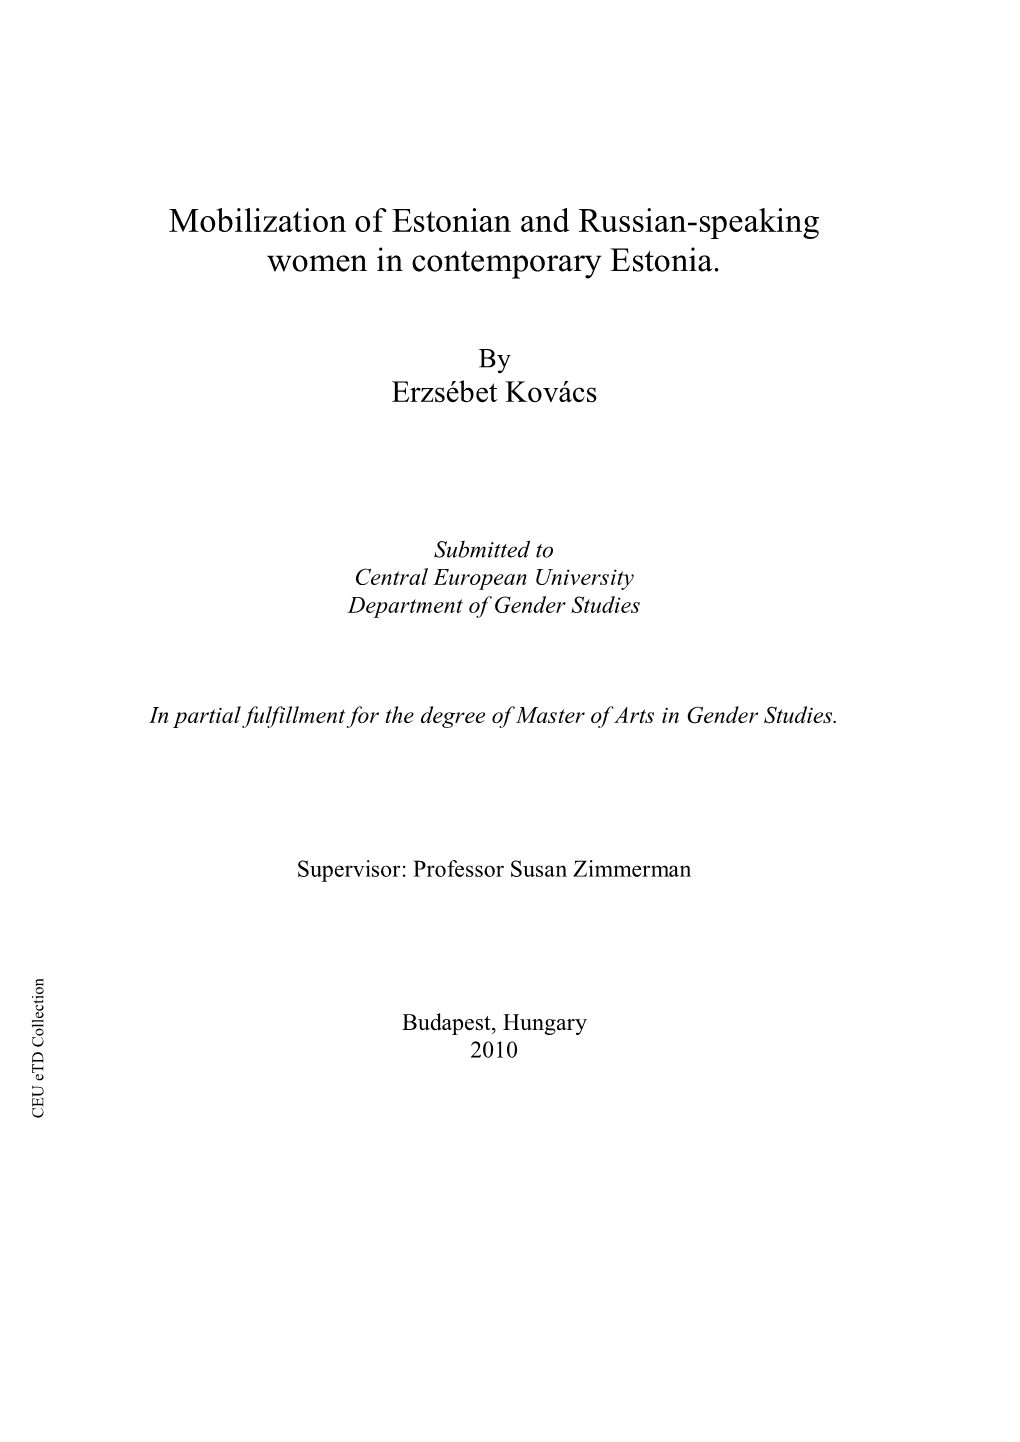 The Place of Non-Estonian Speaking Women in Contemporary Estonia